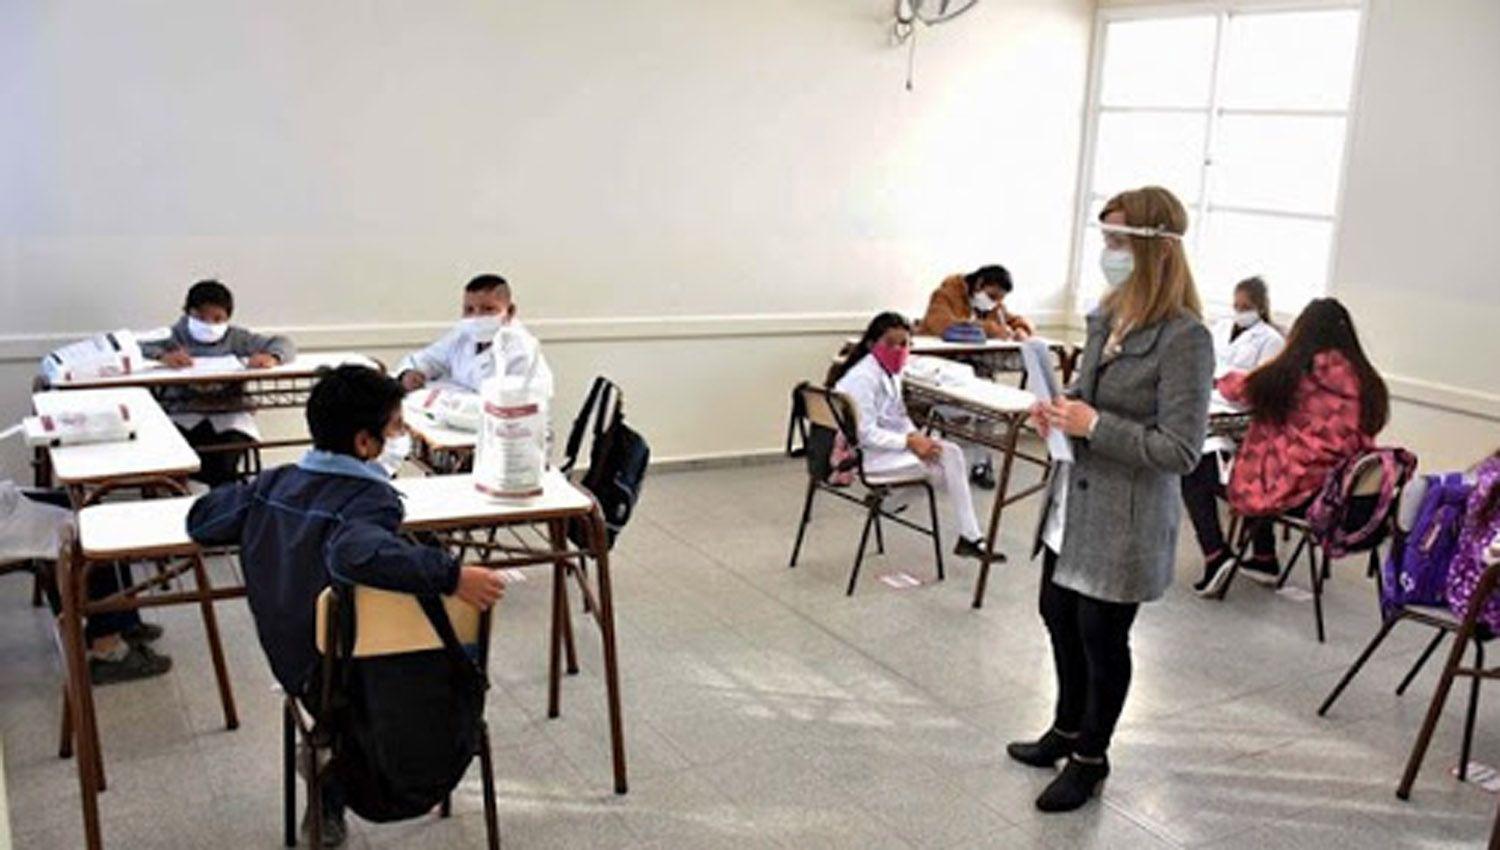 Confirman el primer caso de coronavirus en una escuela en Buenos Aires- ldquoPasoacute lo que sabiacuteamos que iba a pasarrdquo